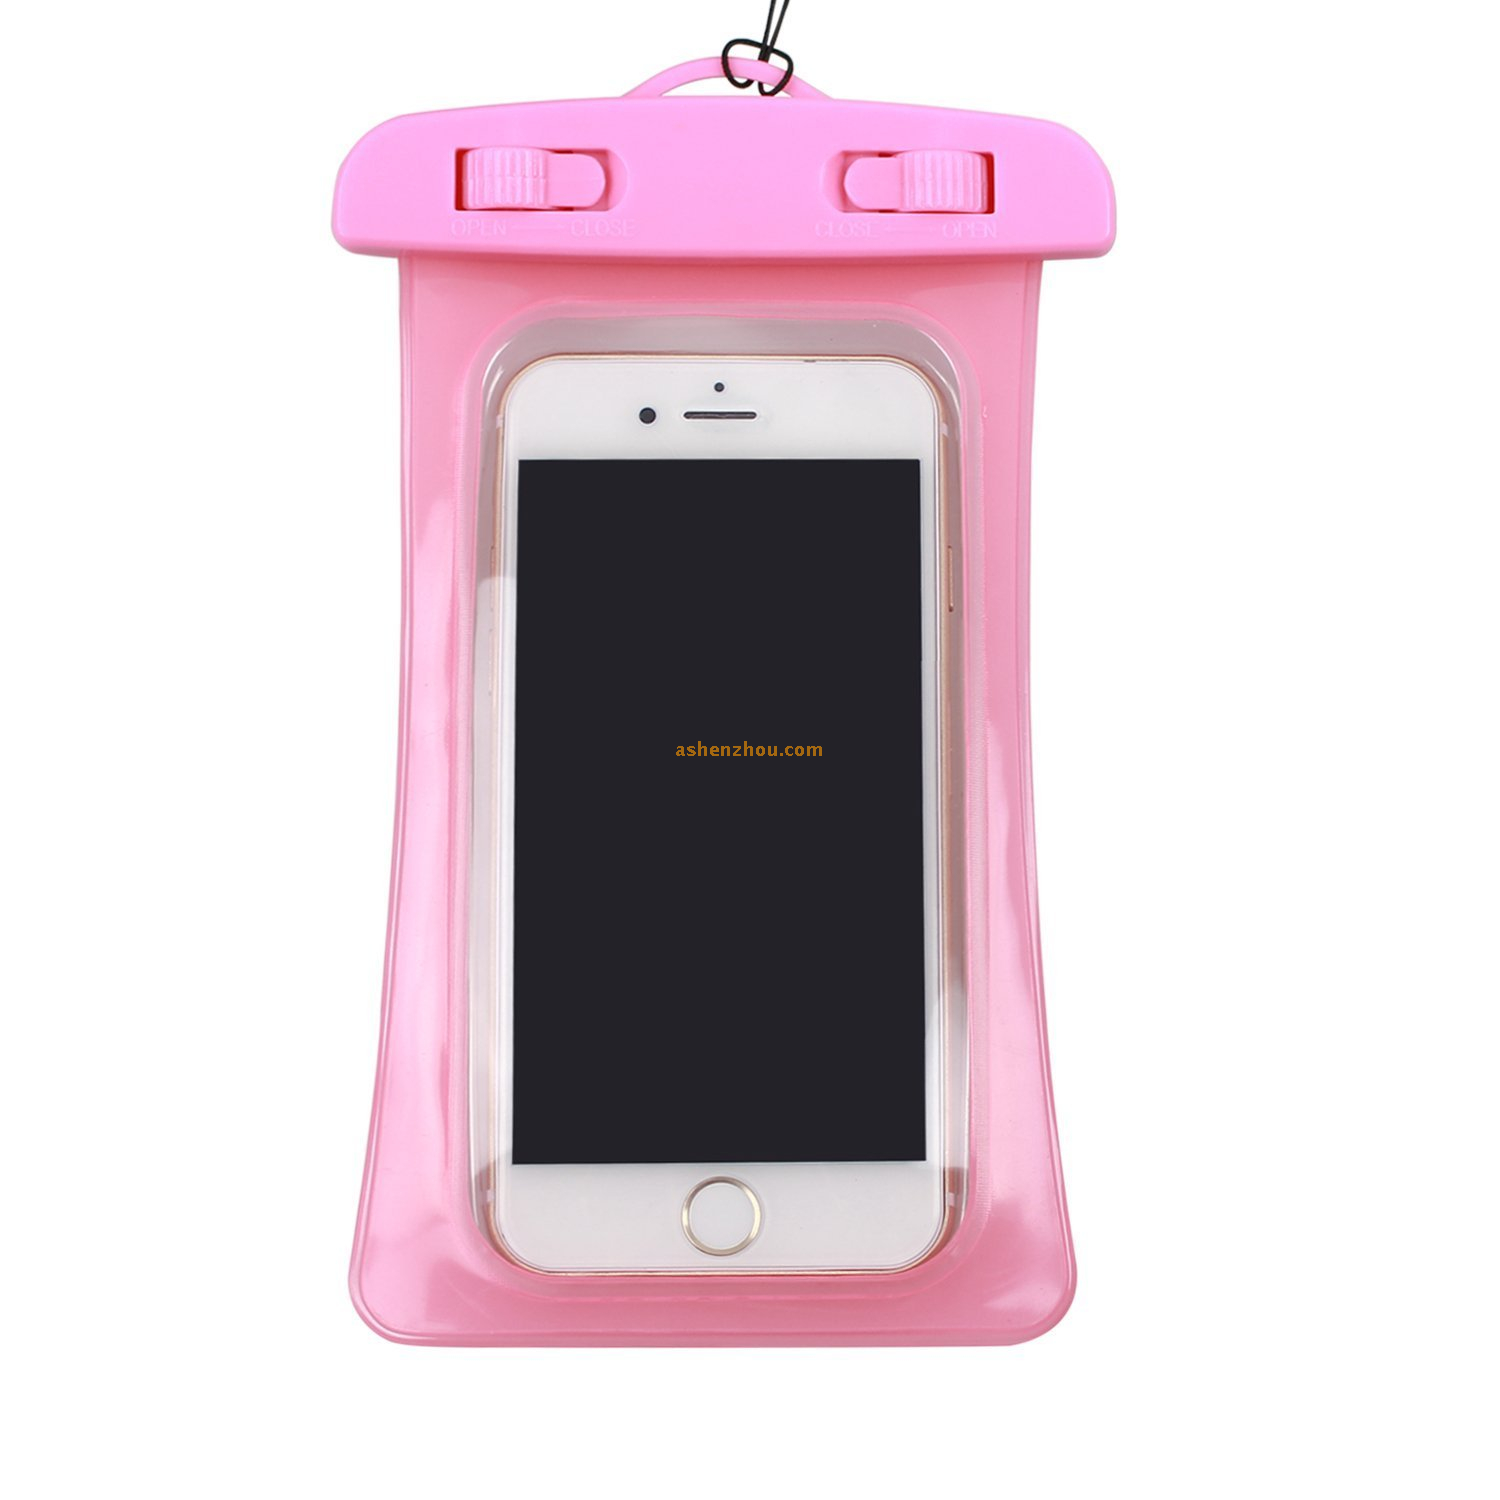 Universial waterproof phone case for iphone 6 plus, water resistant protective case for iphone 6 plus waterproof